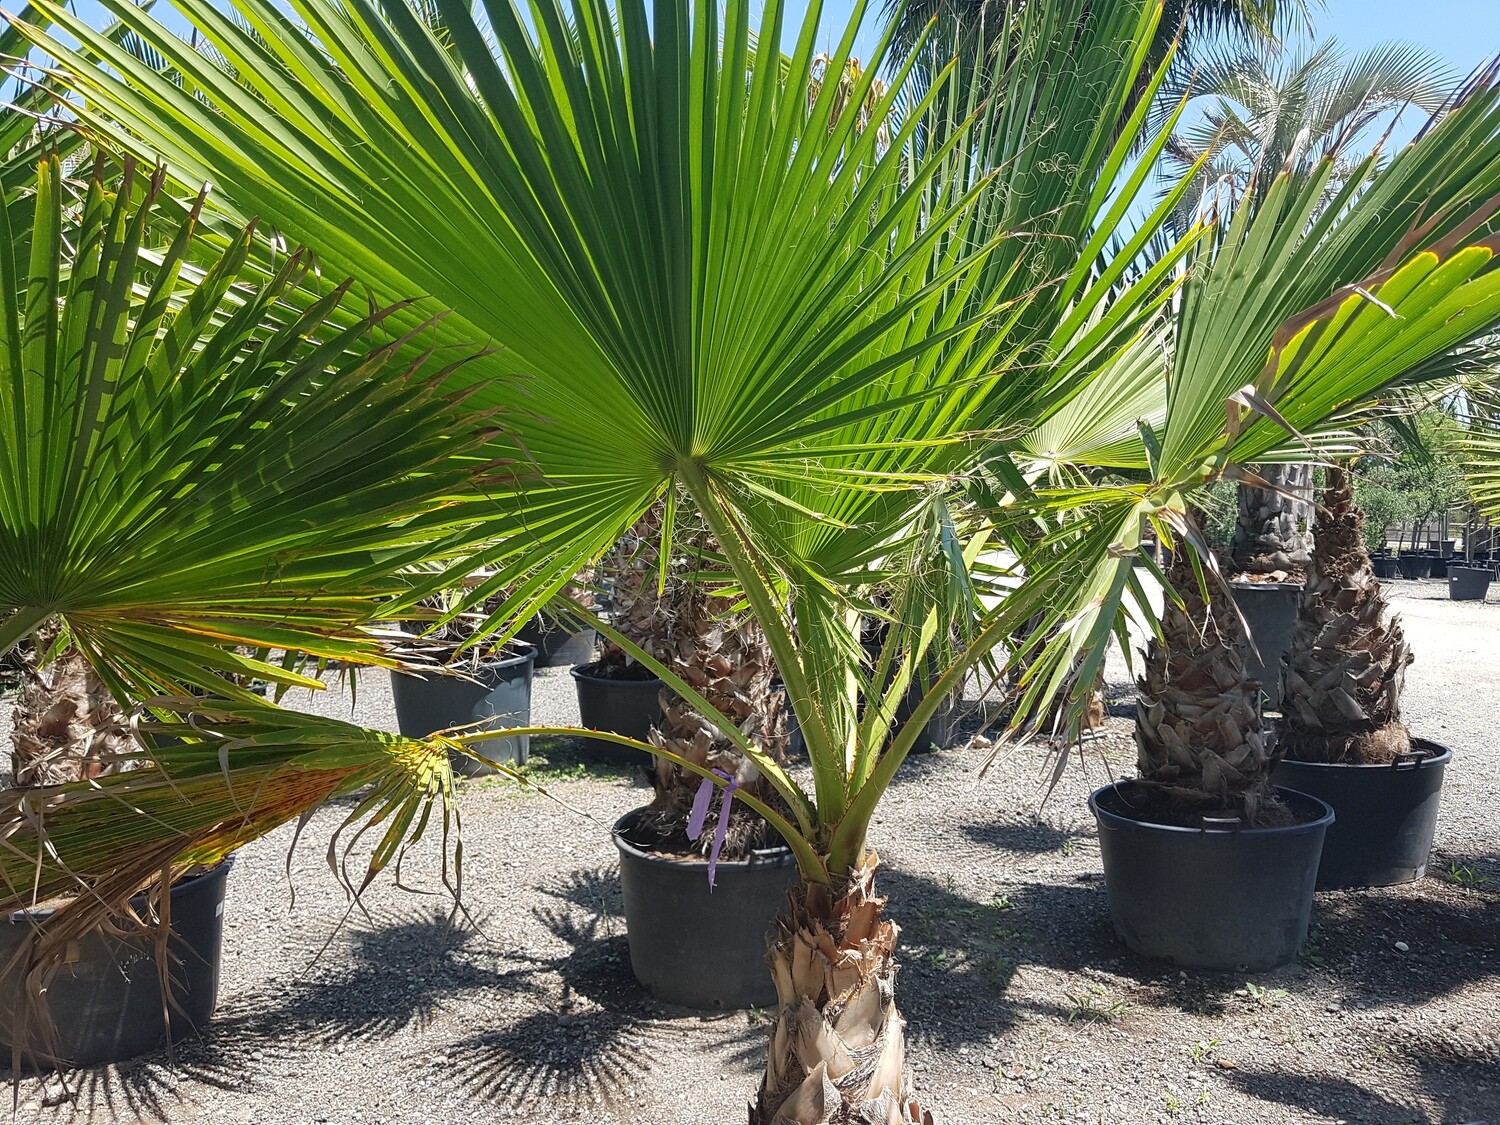 "AmaPlant Washingtonia Robusta" palmera de tronco mas bien estrecho con hojas de color verde intenso TR 60-80 (esbelta) - Exterior - ENVIO INCLUIDO BARCELONA CIUDAD